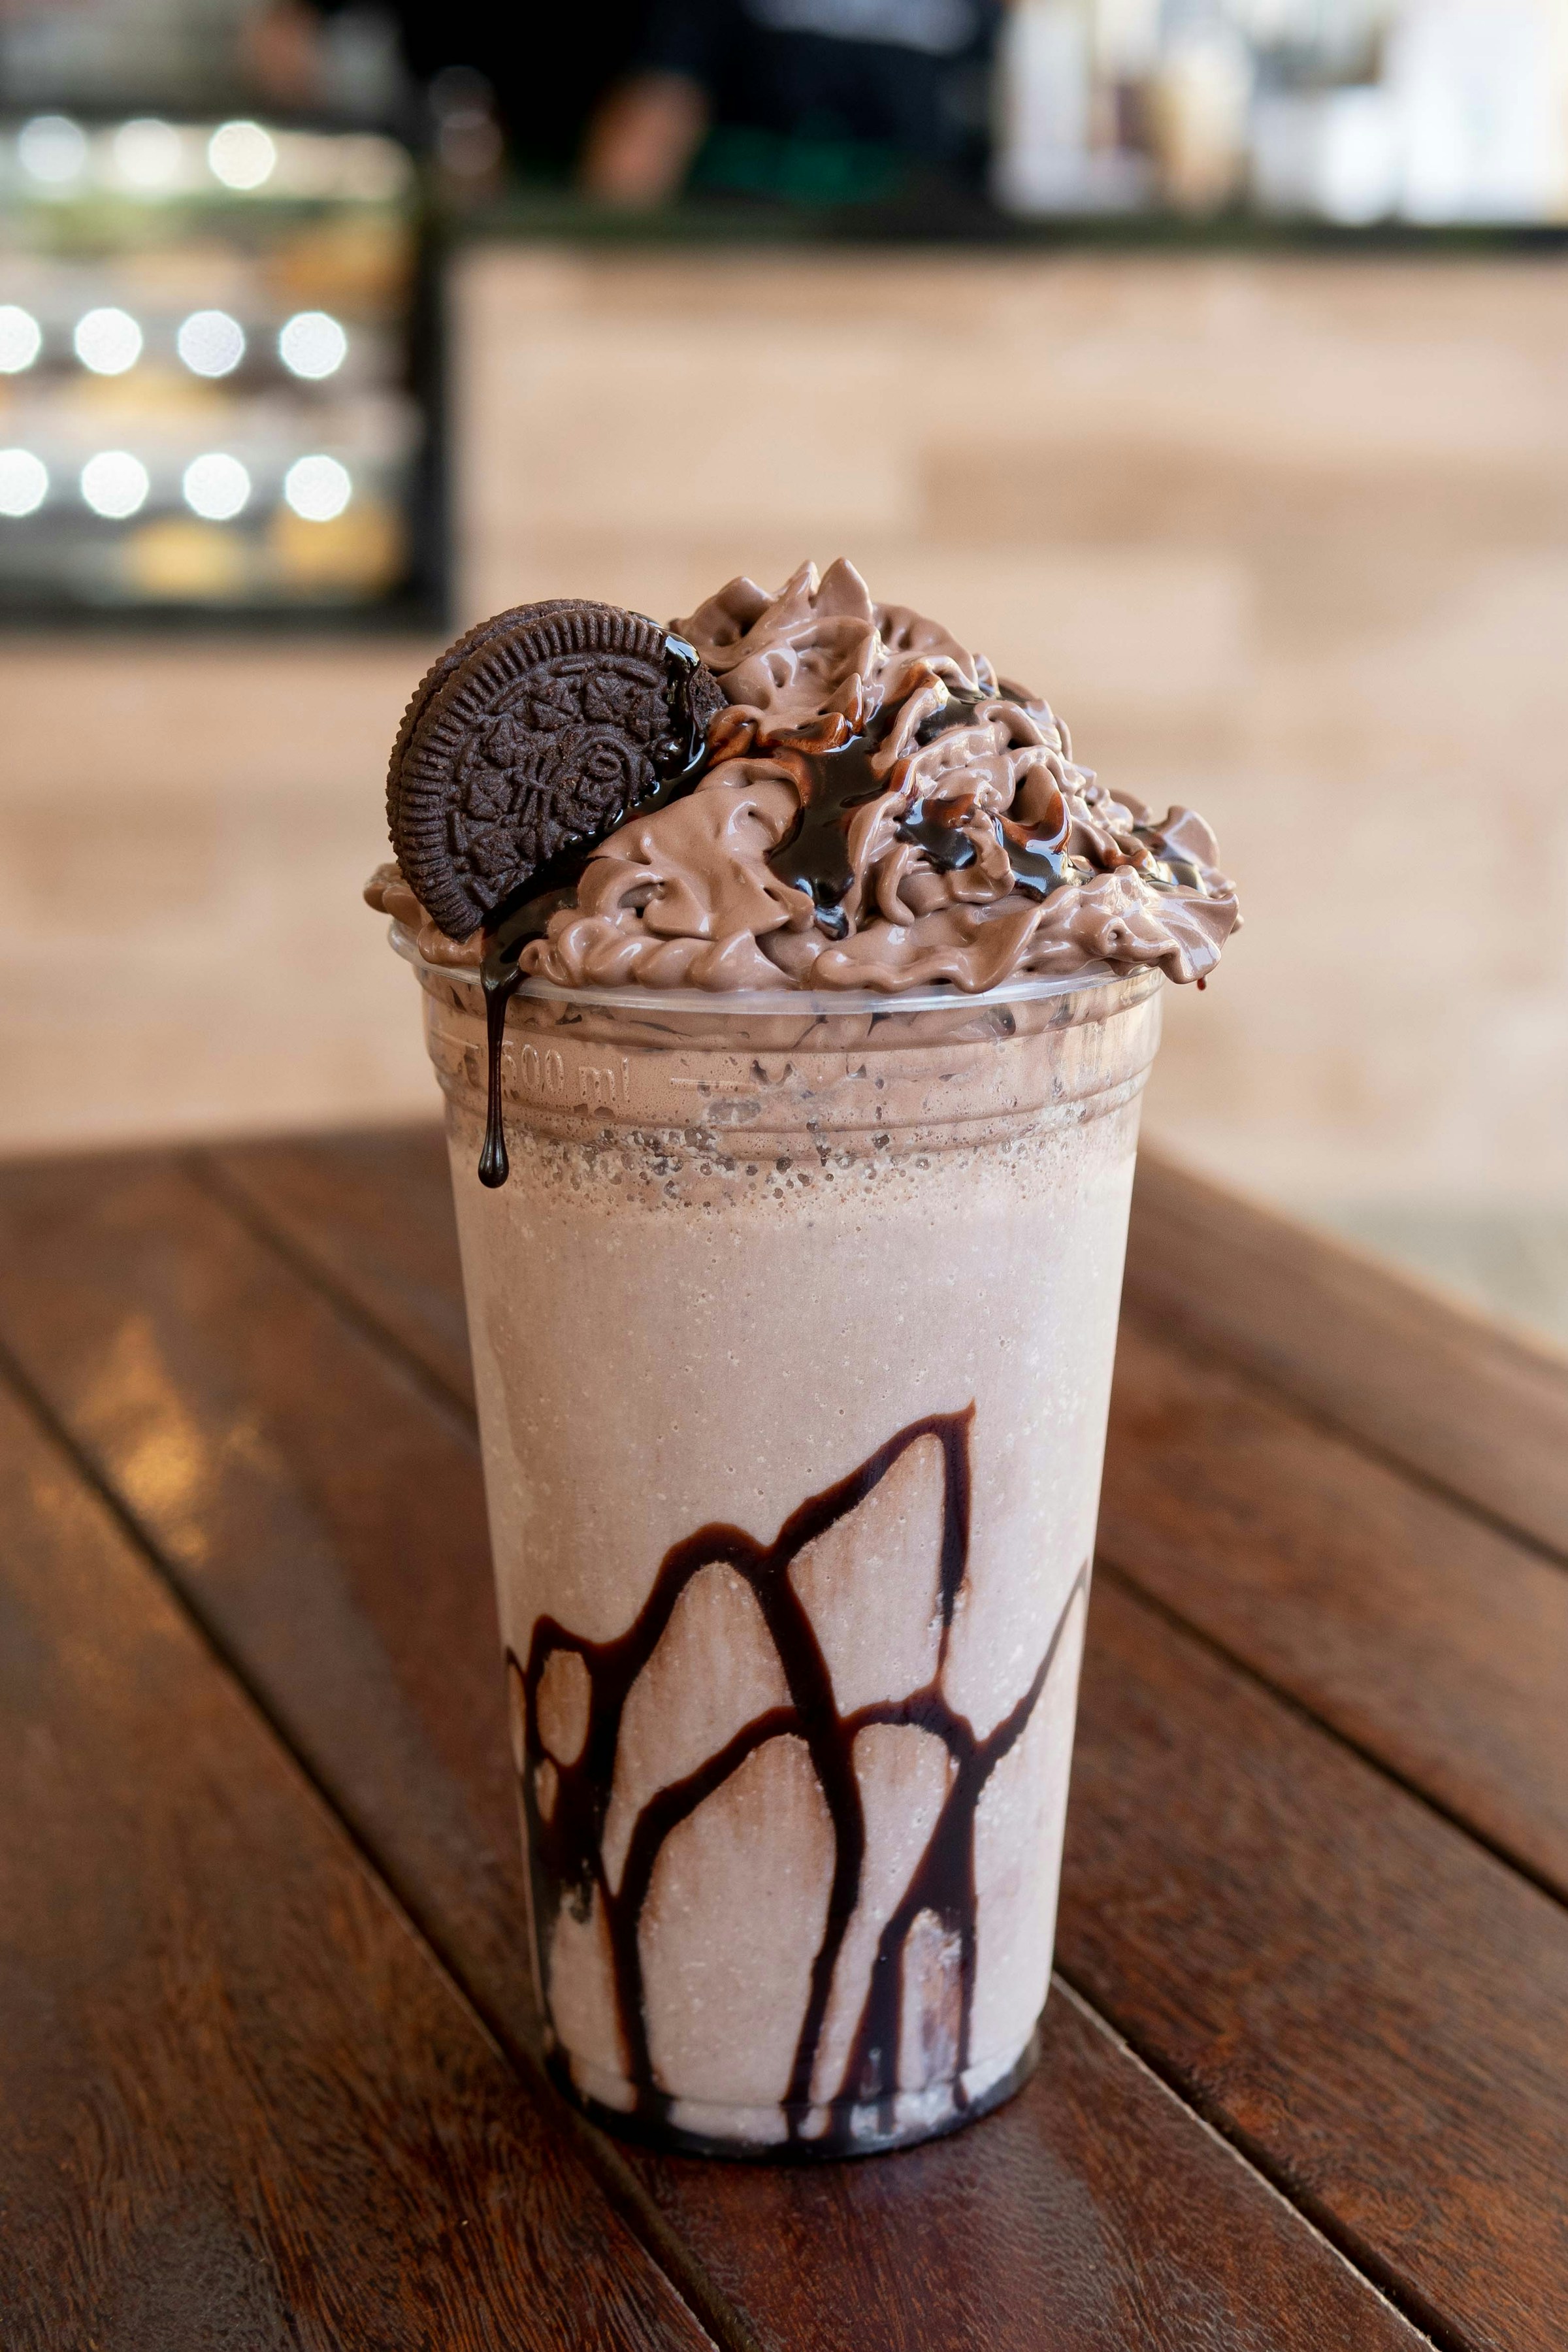 A chocolate milkshake | Source: Pexels